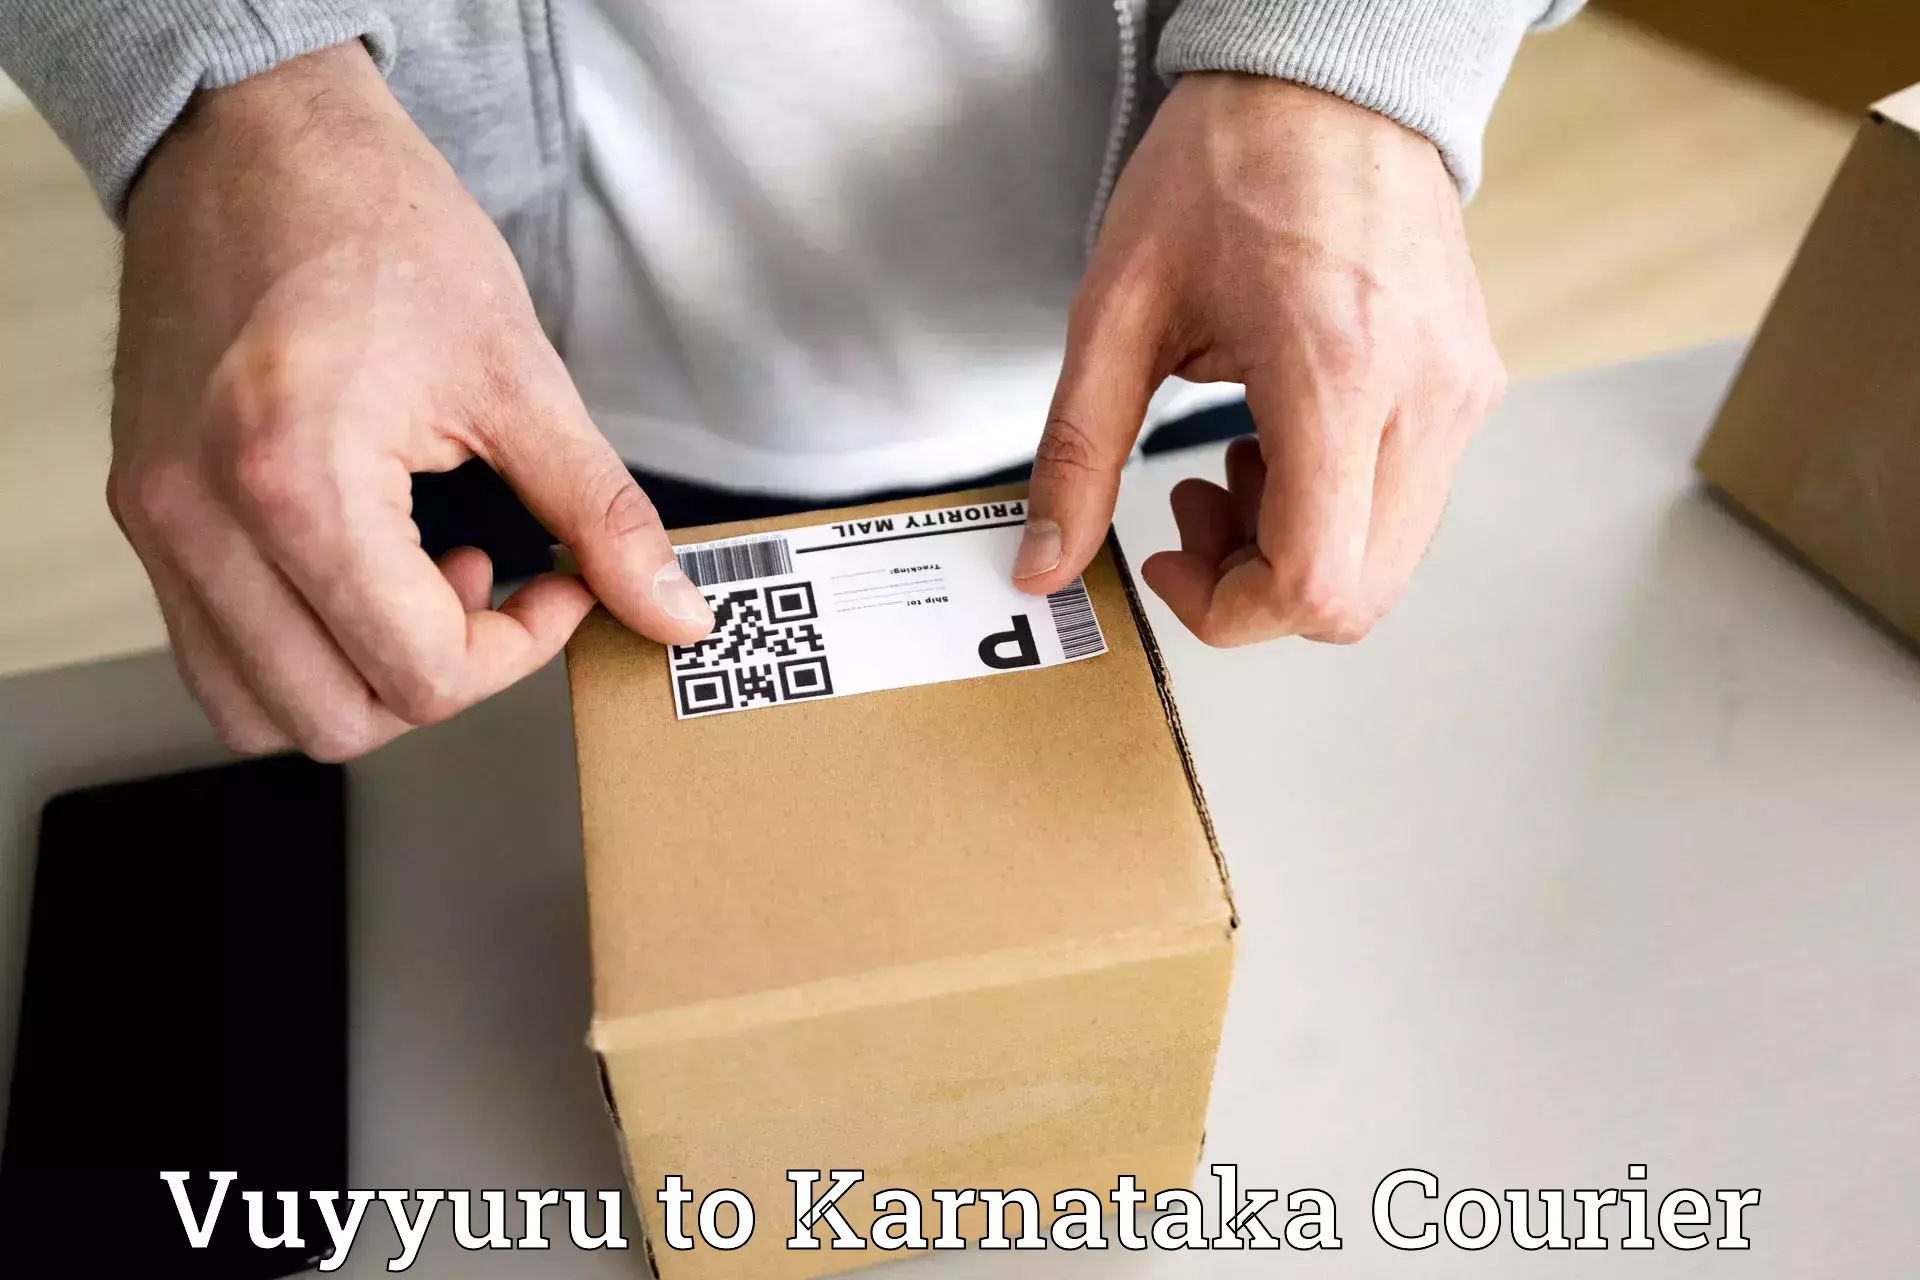 Sustainable courier practices Vuyyuru to Kanakapura